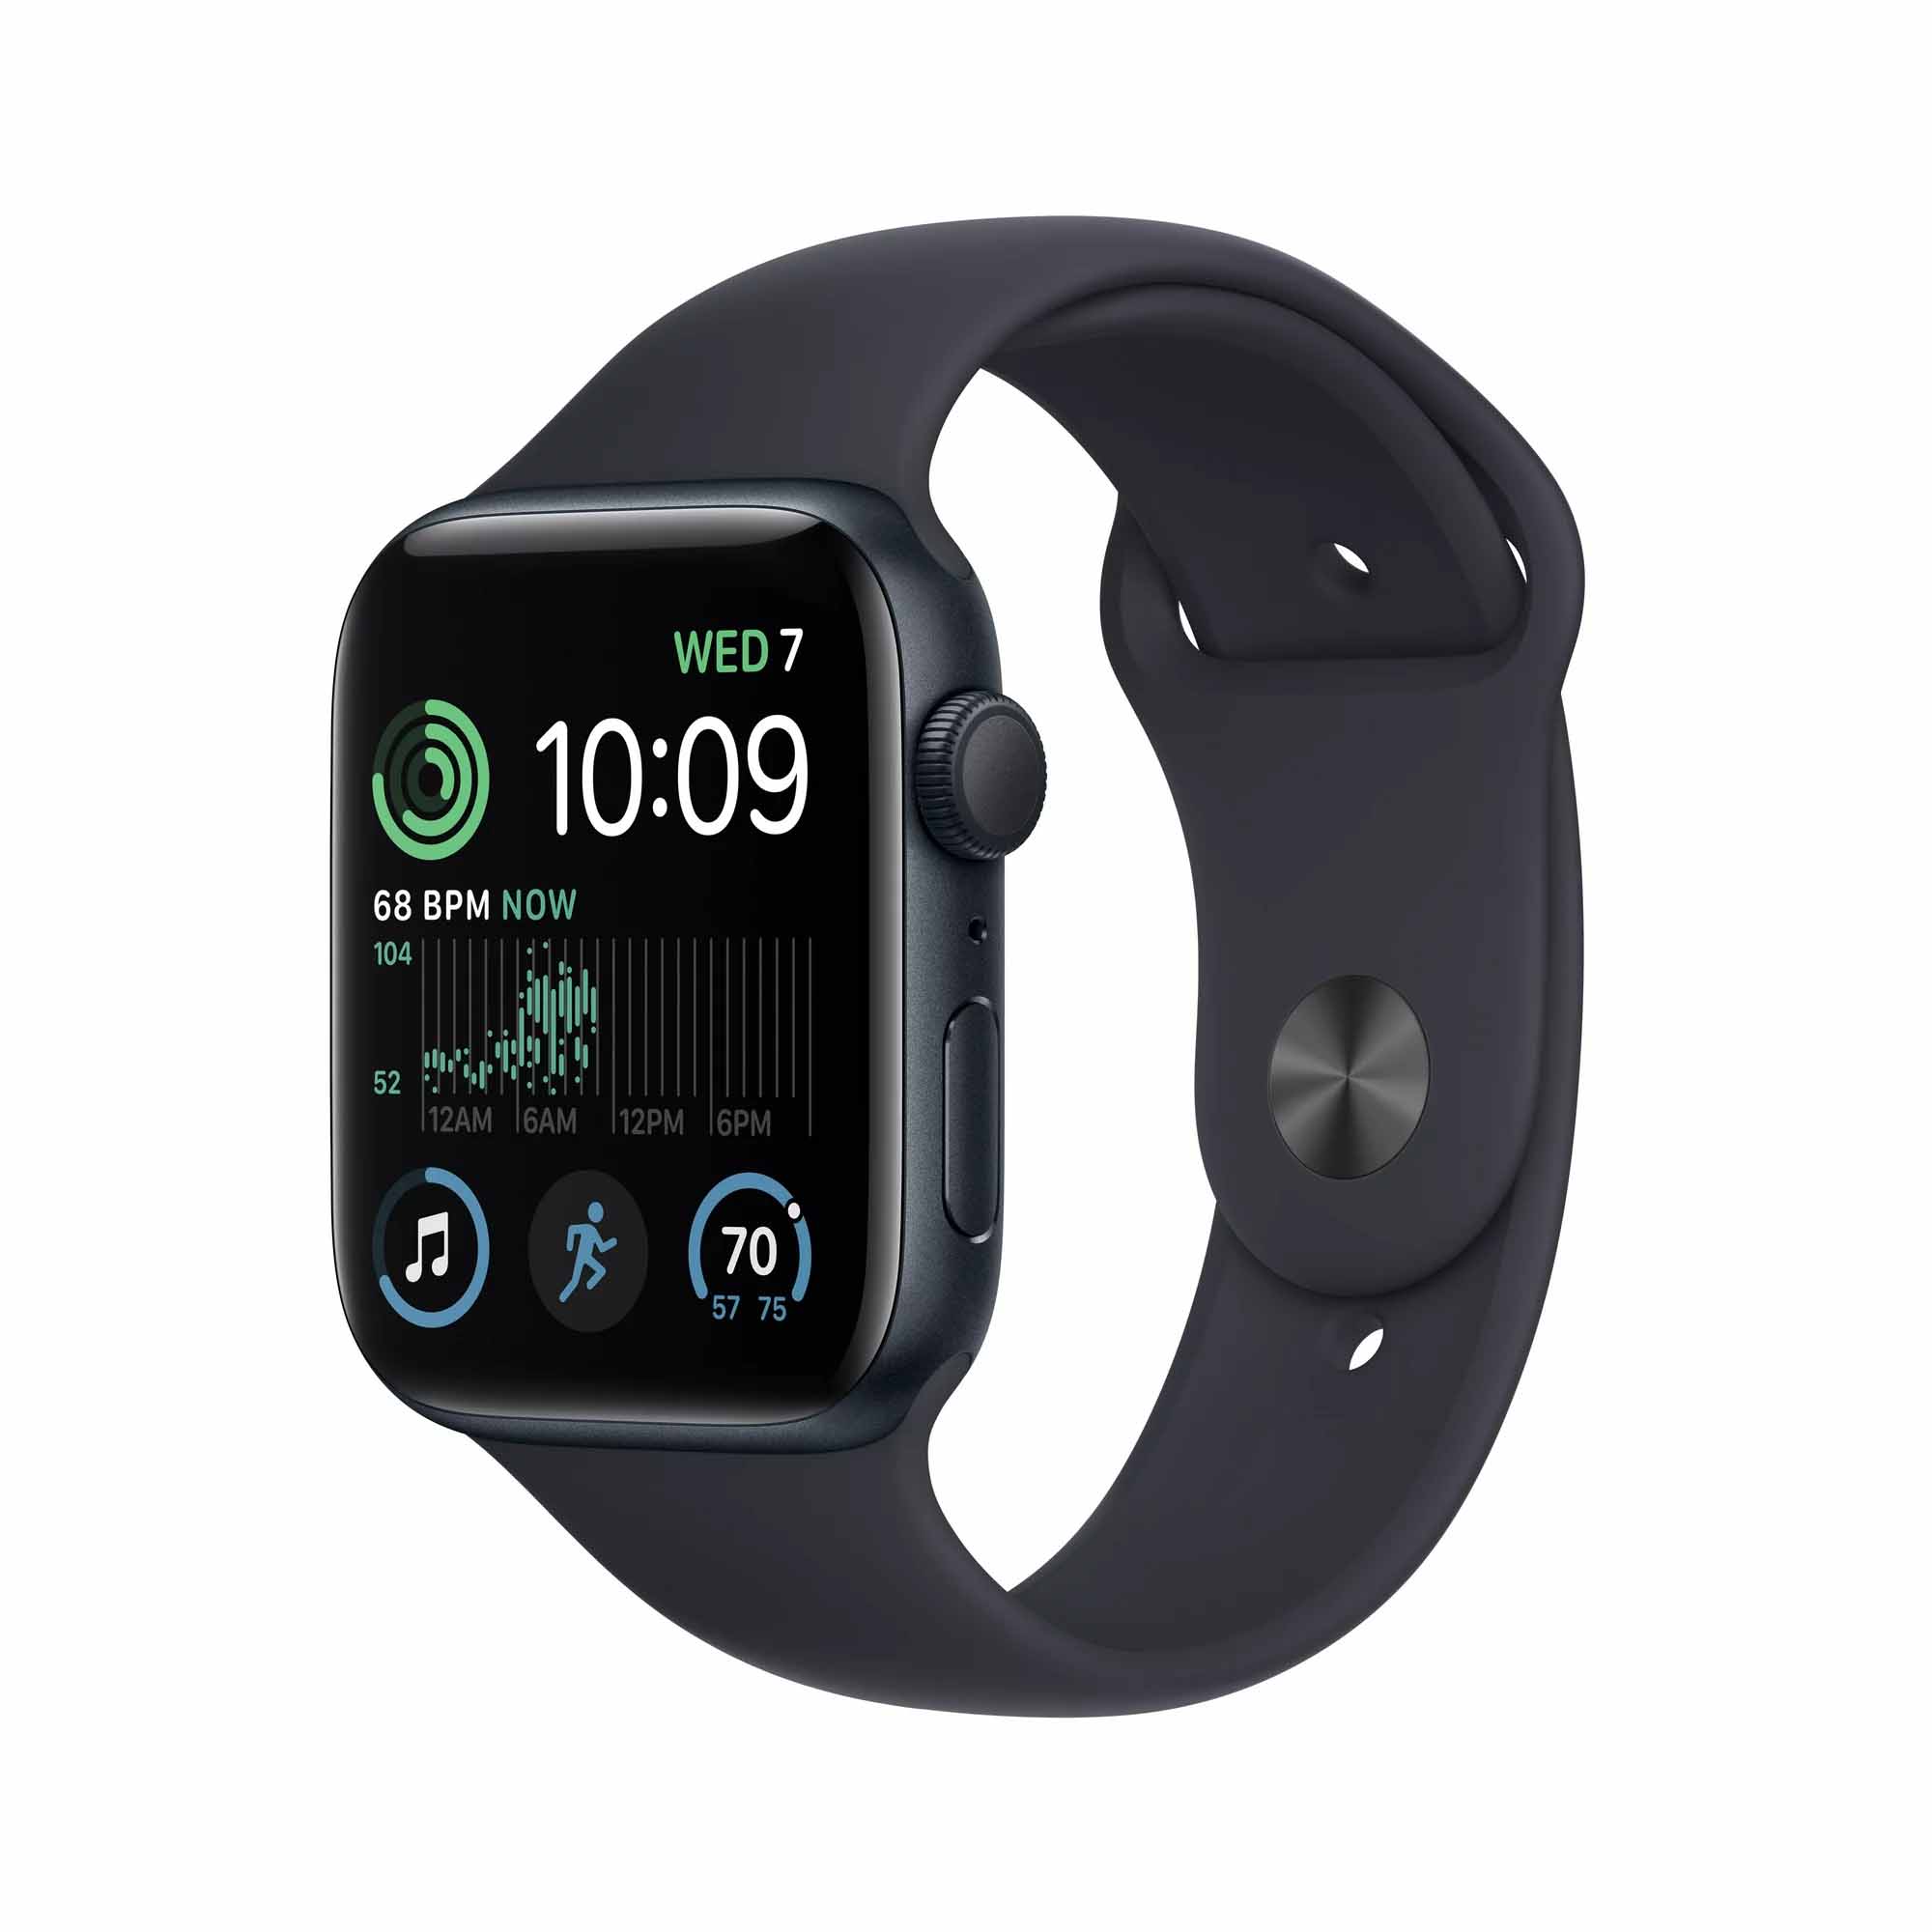 Apple Watch SE (2nd Gen) in black